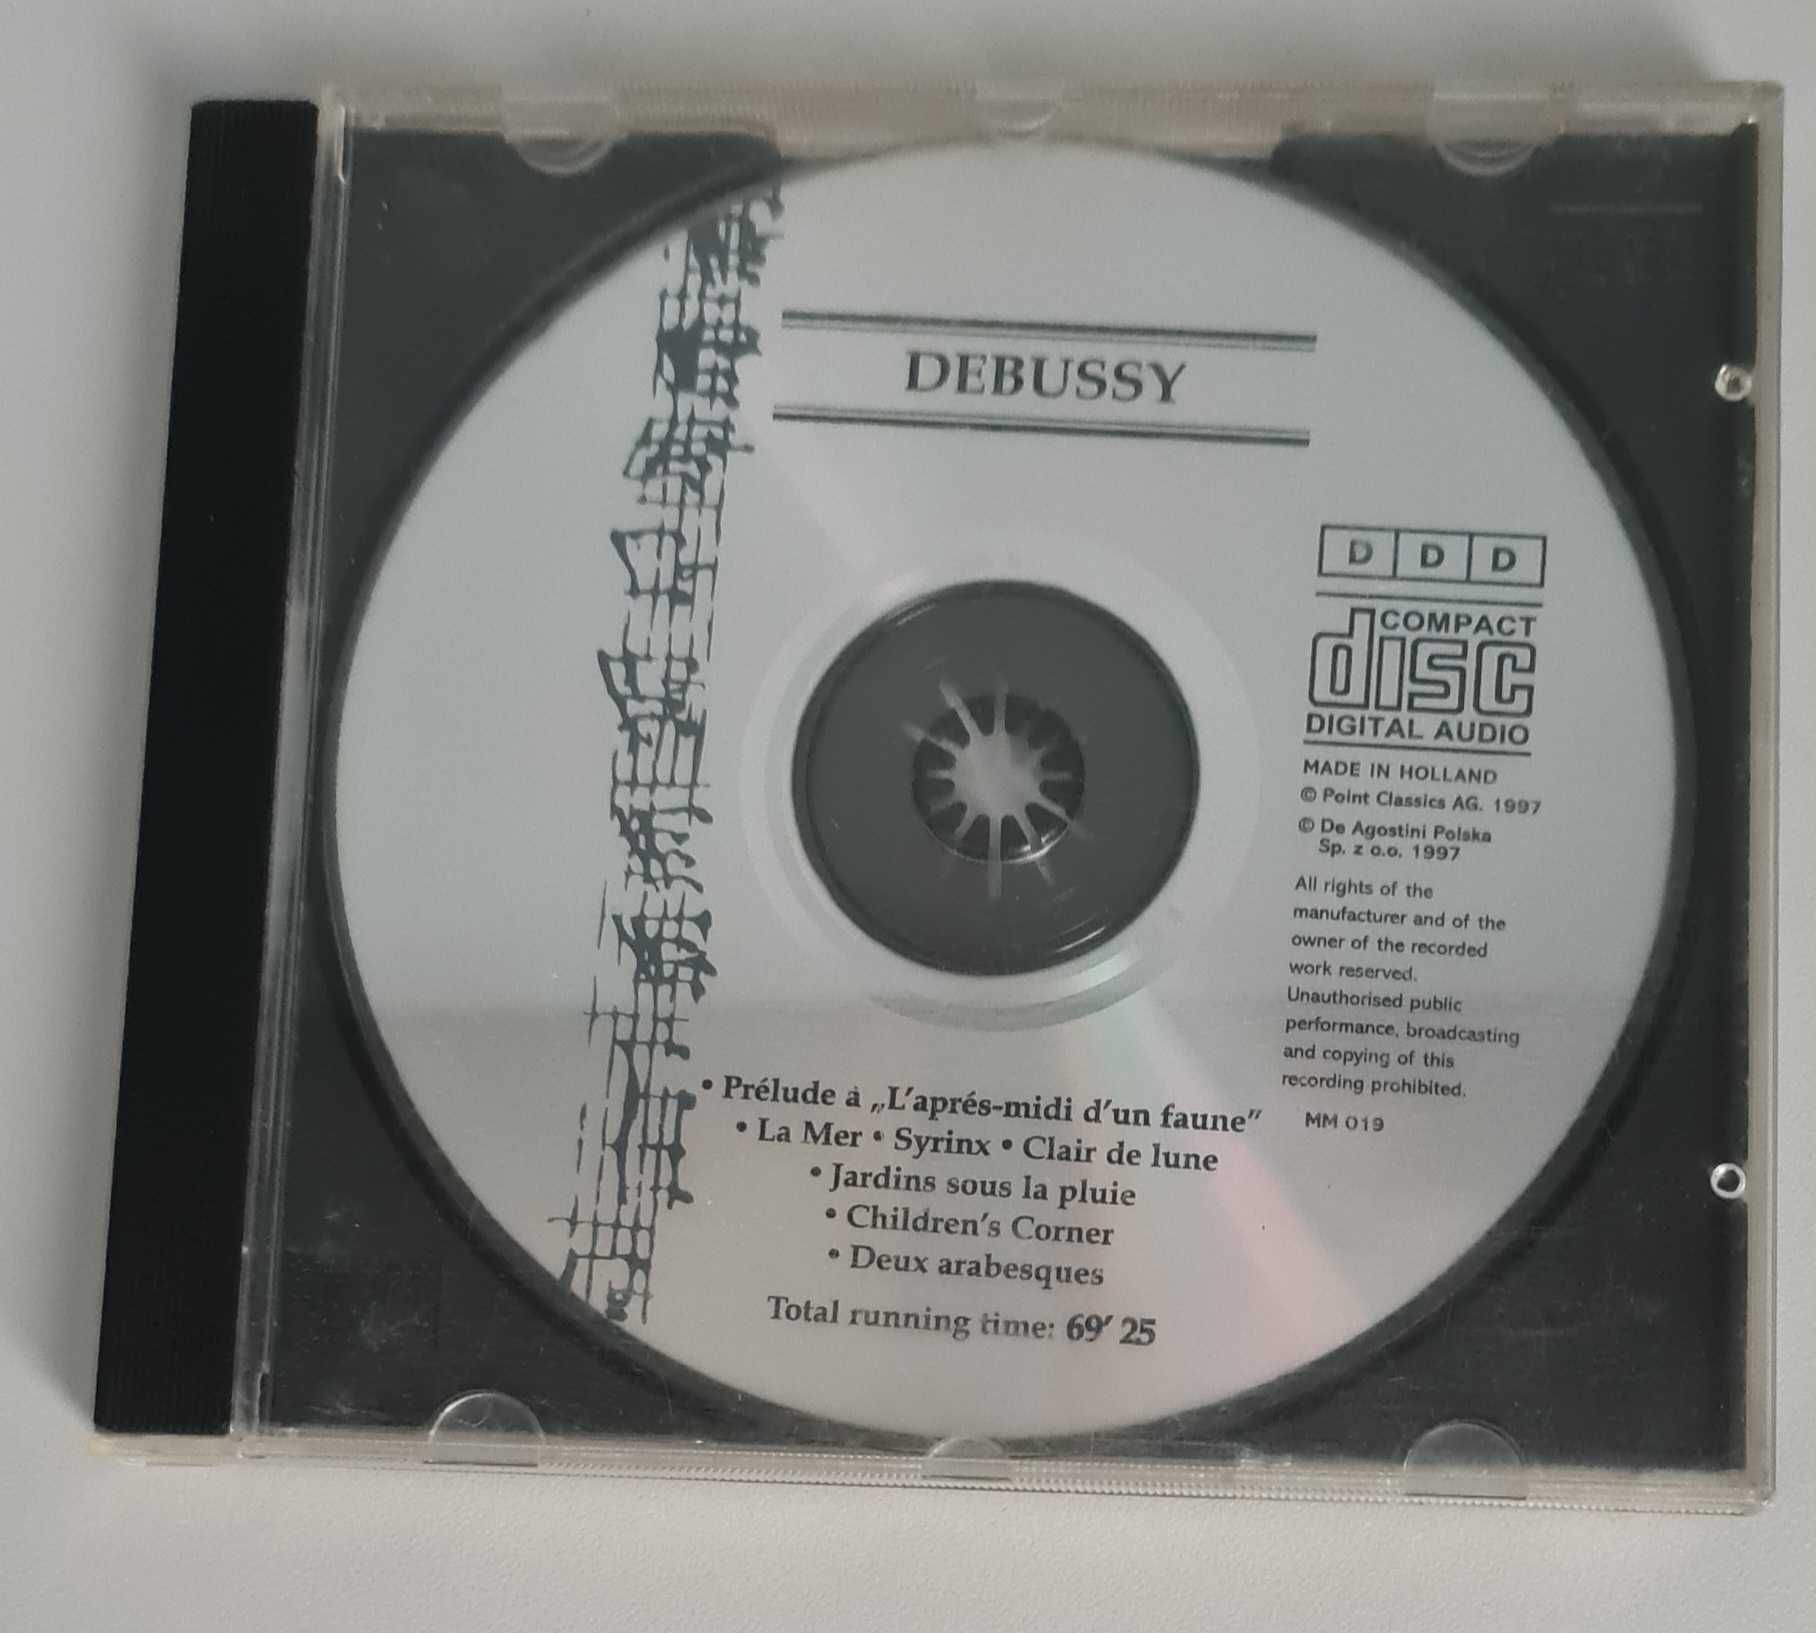 Muzyka mistrzów - Debussy - Poetyckie impresje cd